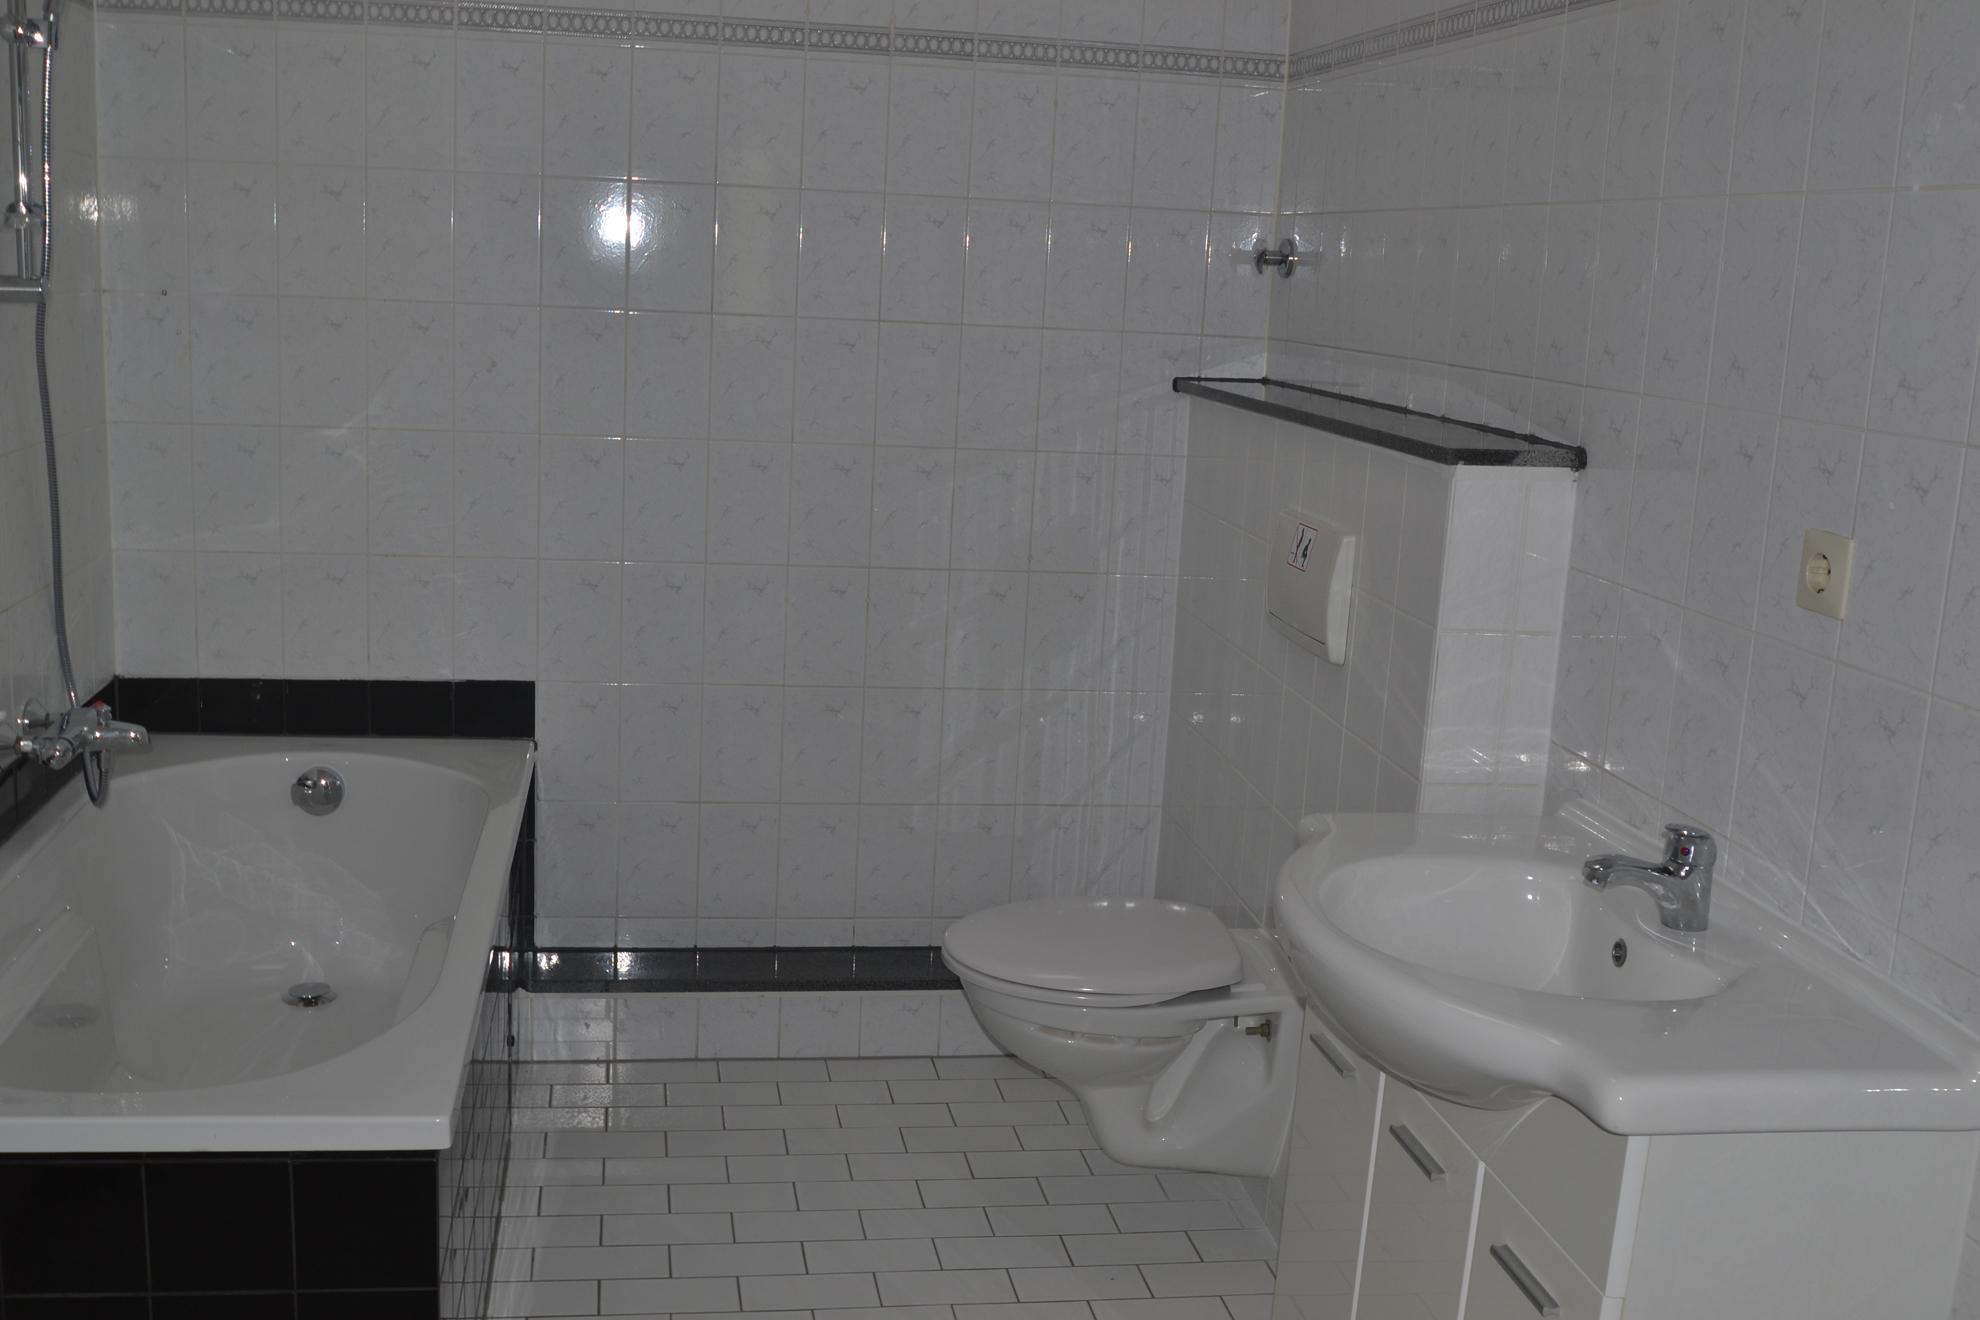 Badezimmer vor dem homestaging #badezimmer #badezimmerschrank #weißefliesen #schwarzebadewanne ©wohnPerfektion